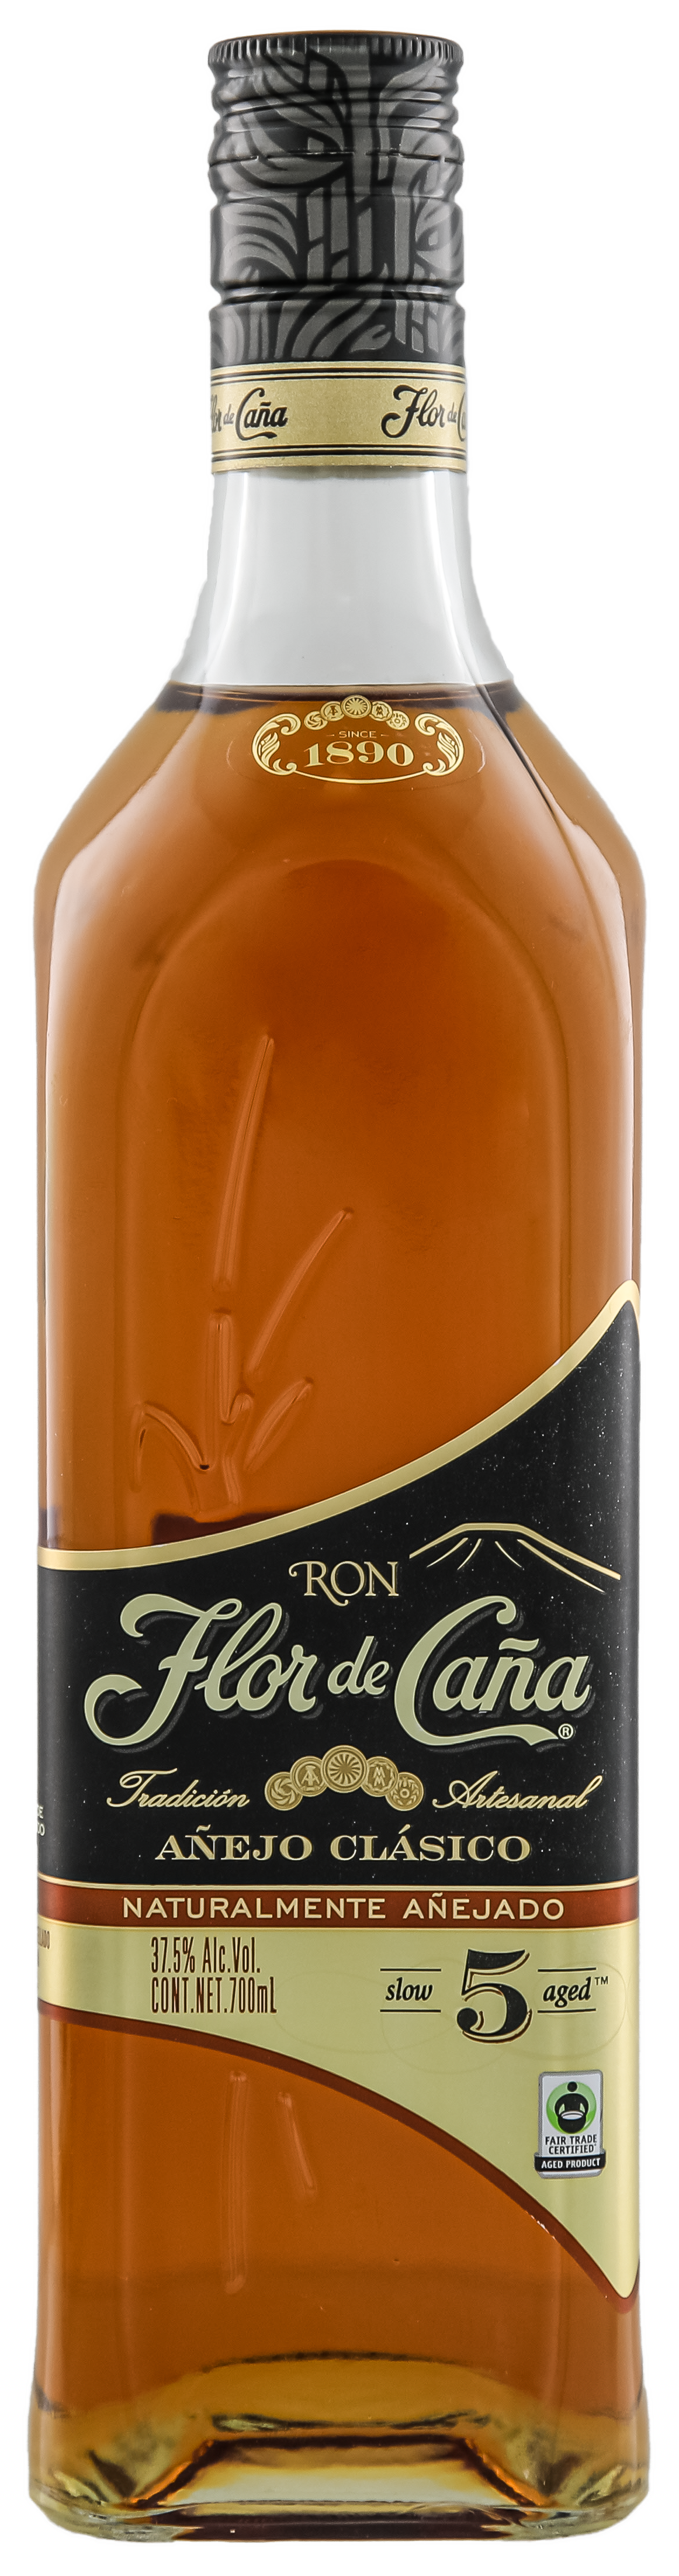 Flor de Cana 5 Jahre Anejo Clasico Black Rum 37,5% 0,7l